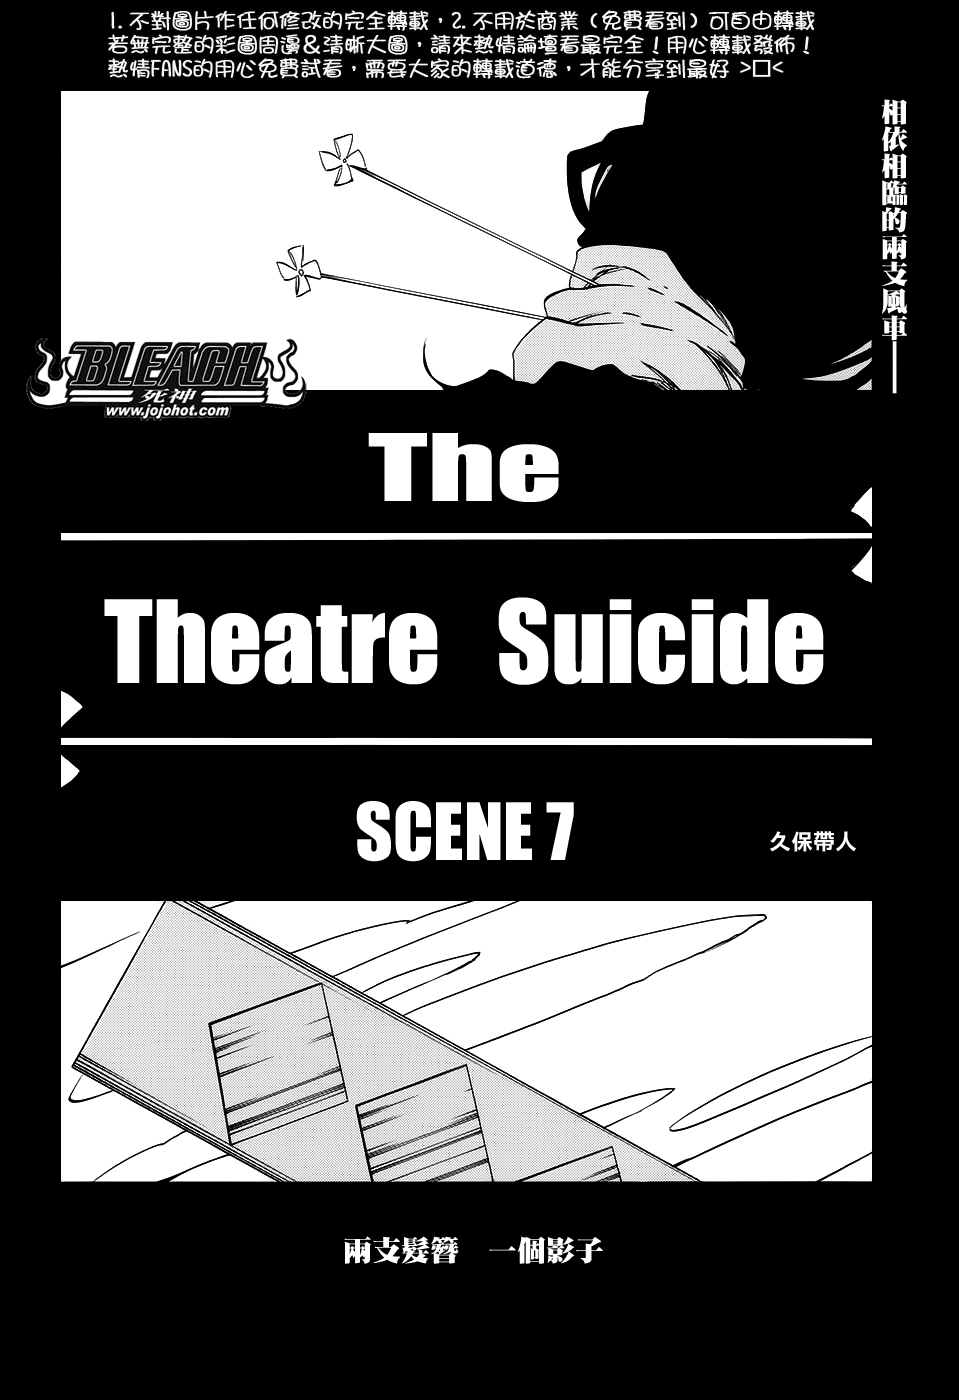 653 The Theatre Suicide SCENE 7